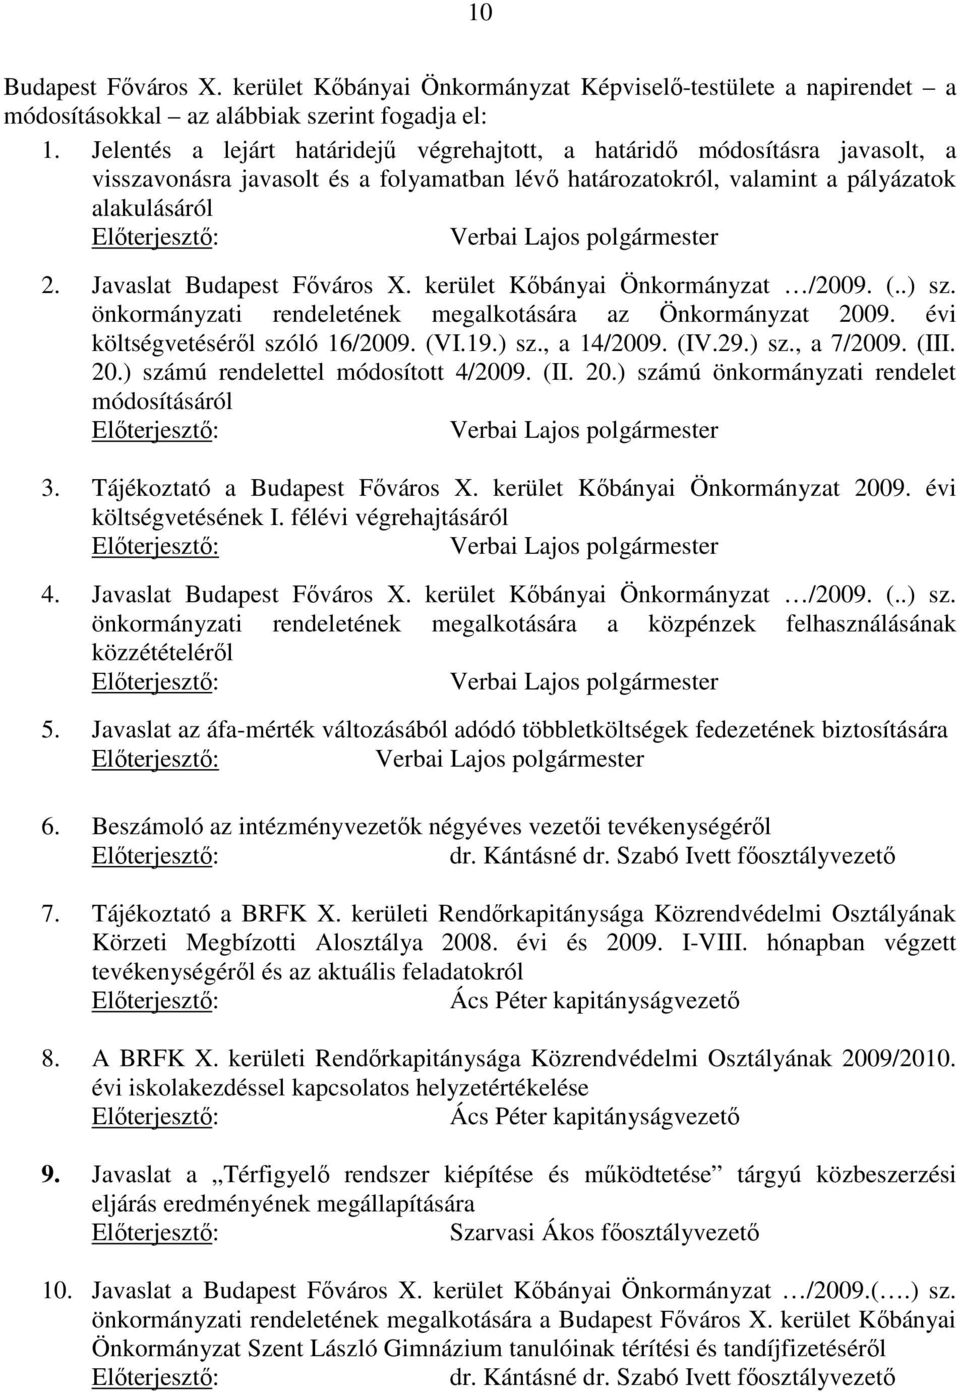 Javaslat Budapest Főváros X. kerület Kőbányai Önkormányzat /2009. (..) sz. önkormányzati rendeletének megalkotására az Önkormányzat 2009. évi költségvetéséről szóló 16/2009. (VI.19.) sz., a 14/2009.